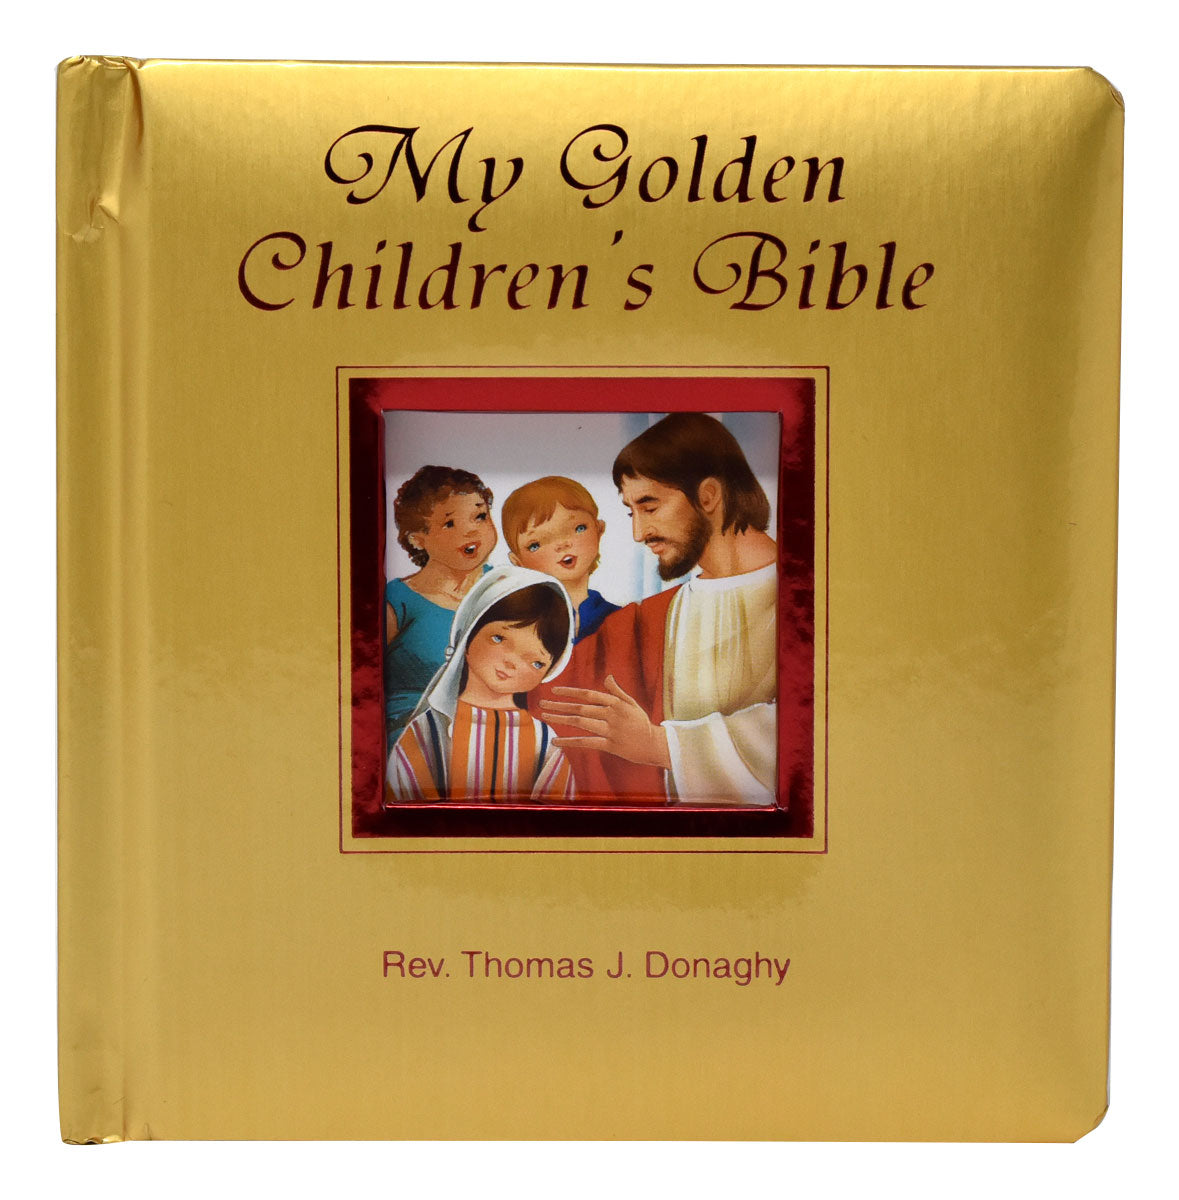 My Golden Children's Bible